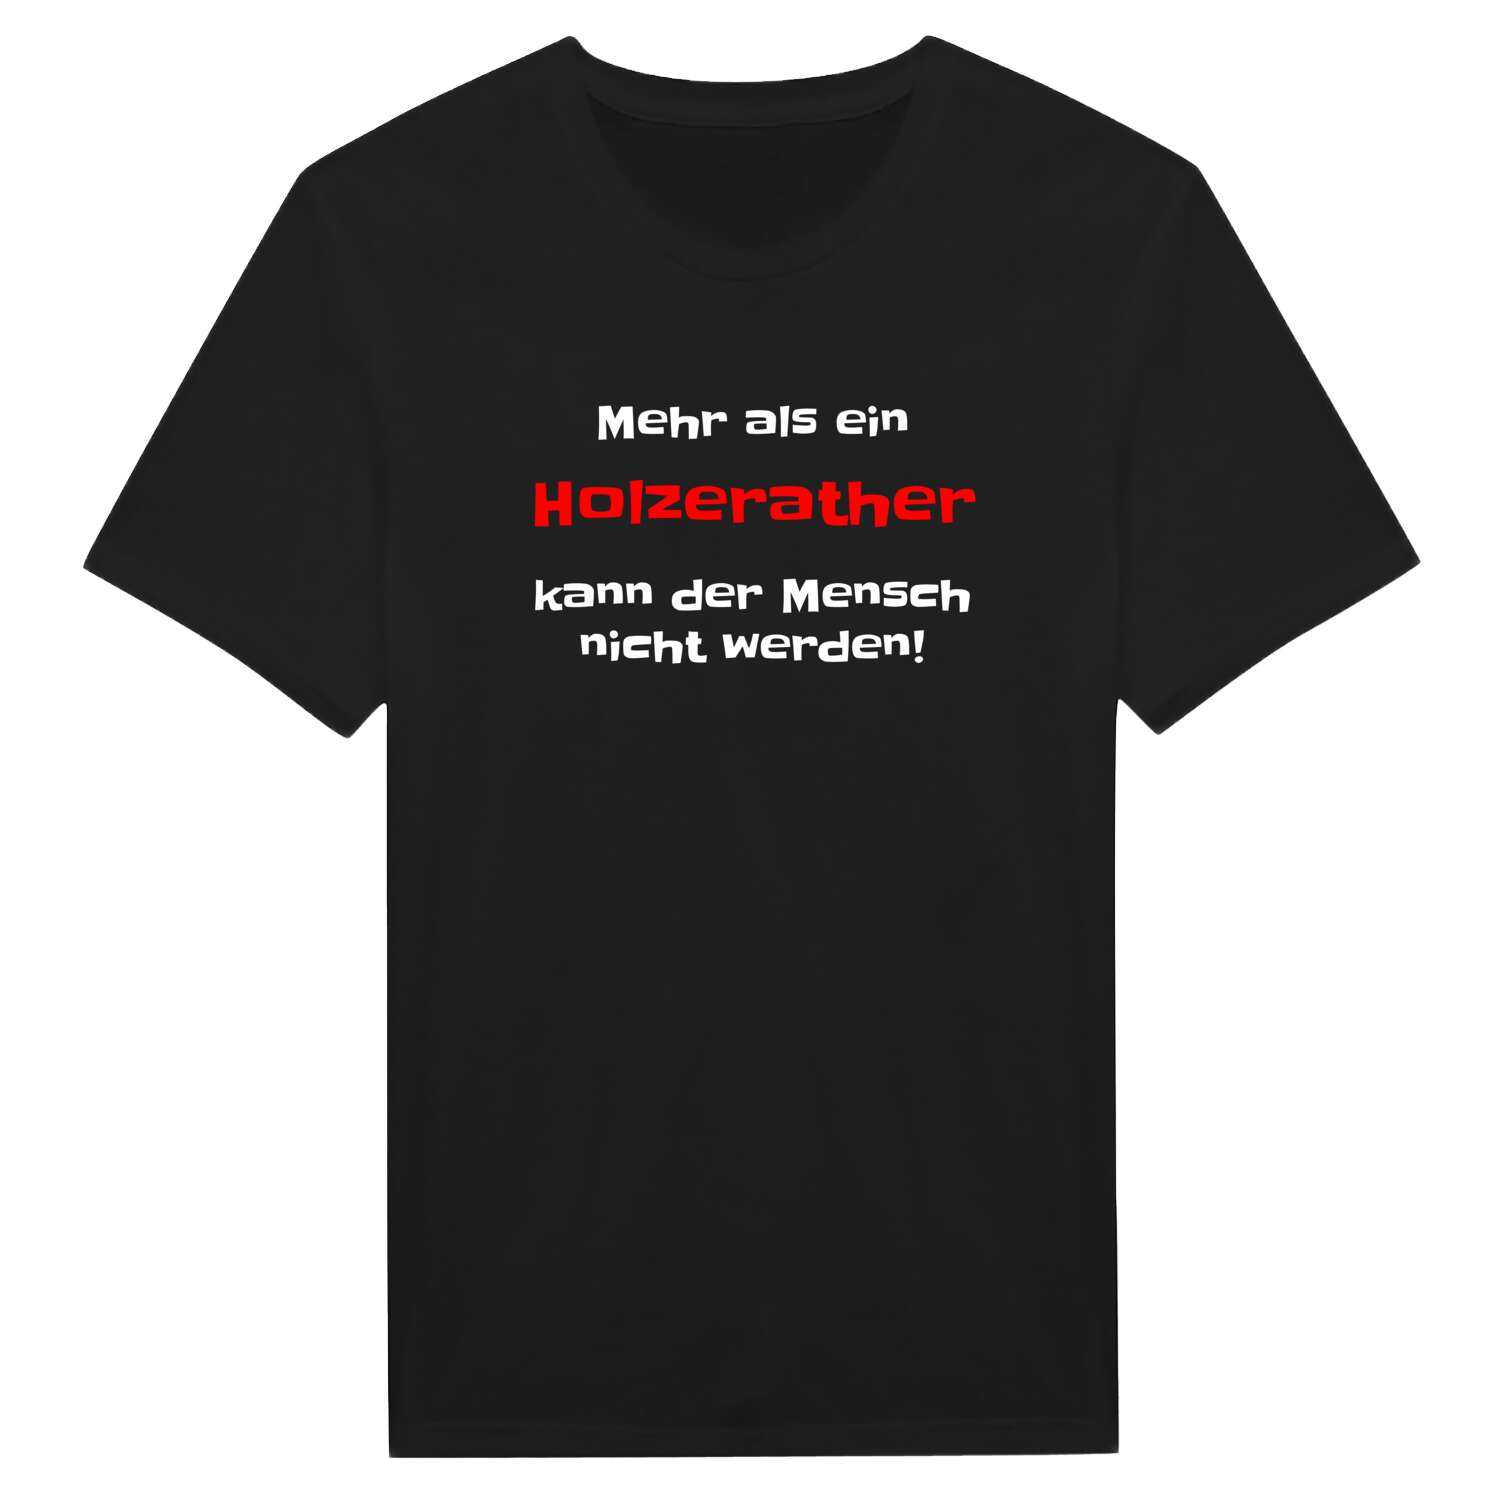 Holzerath T-Shirt »Mehr als ein«